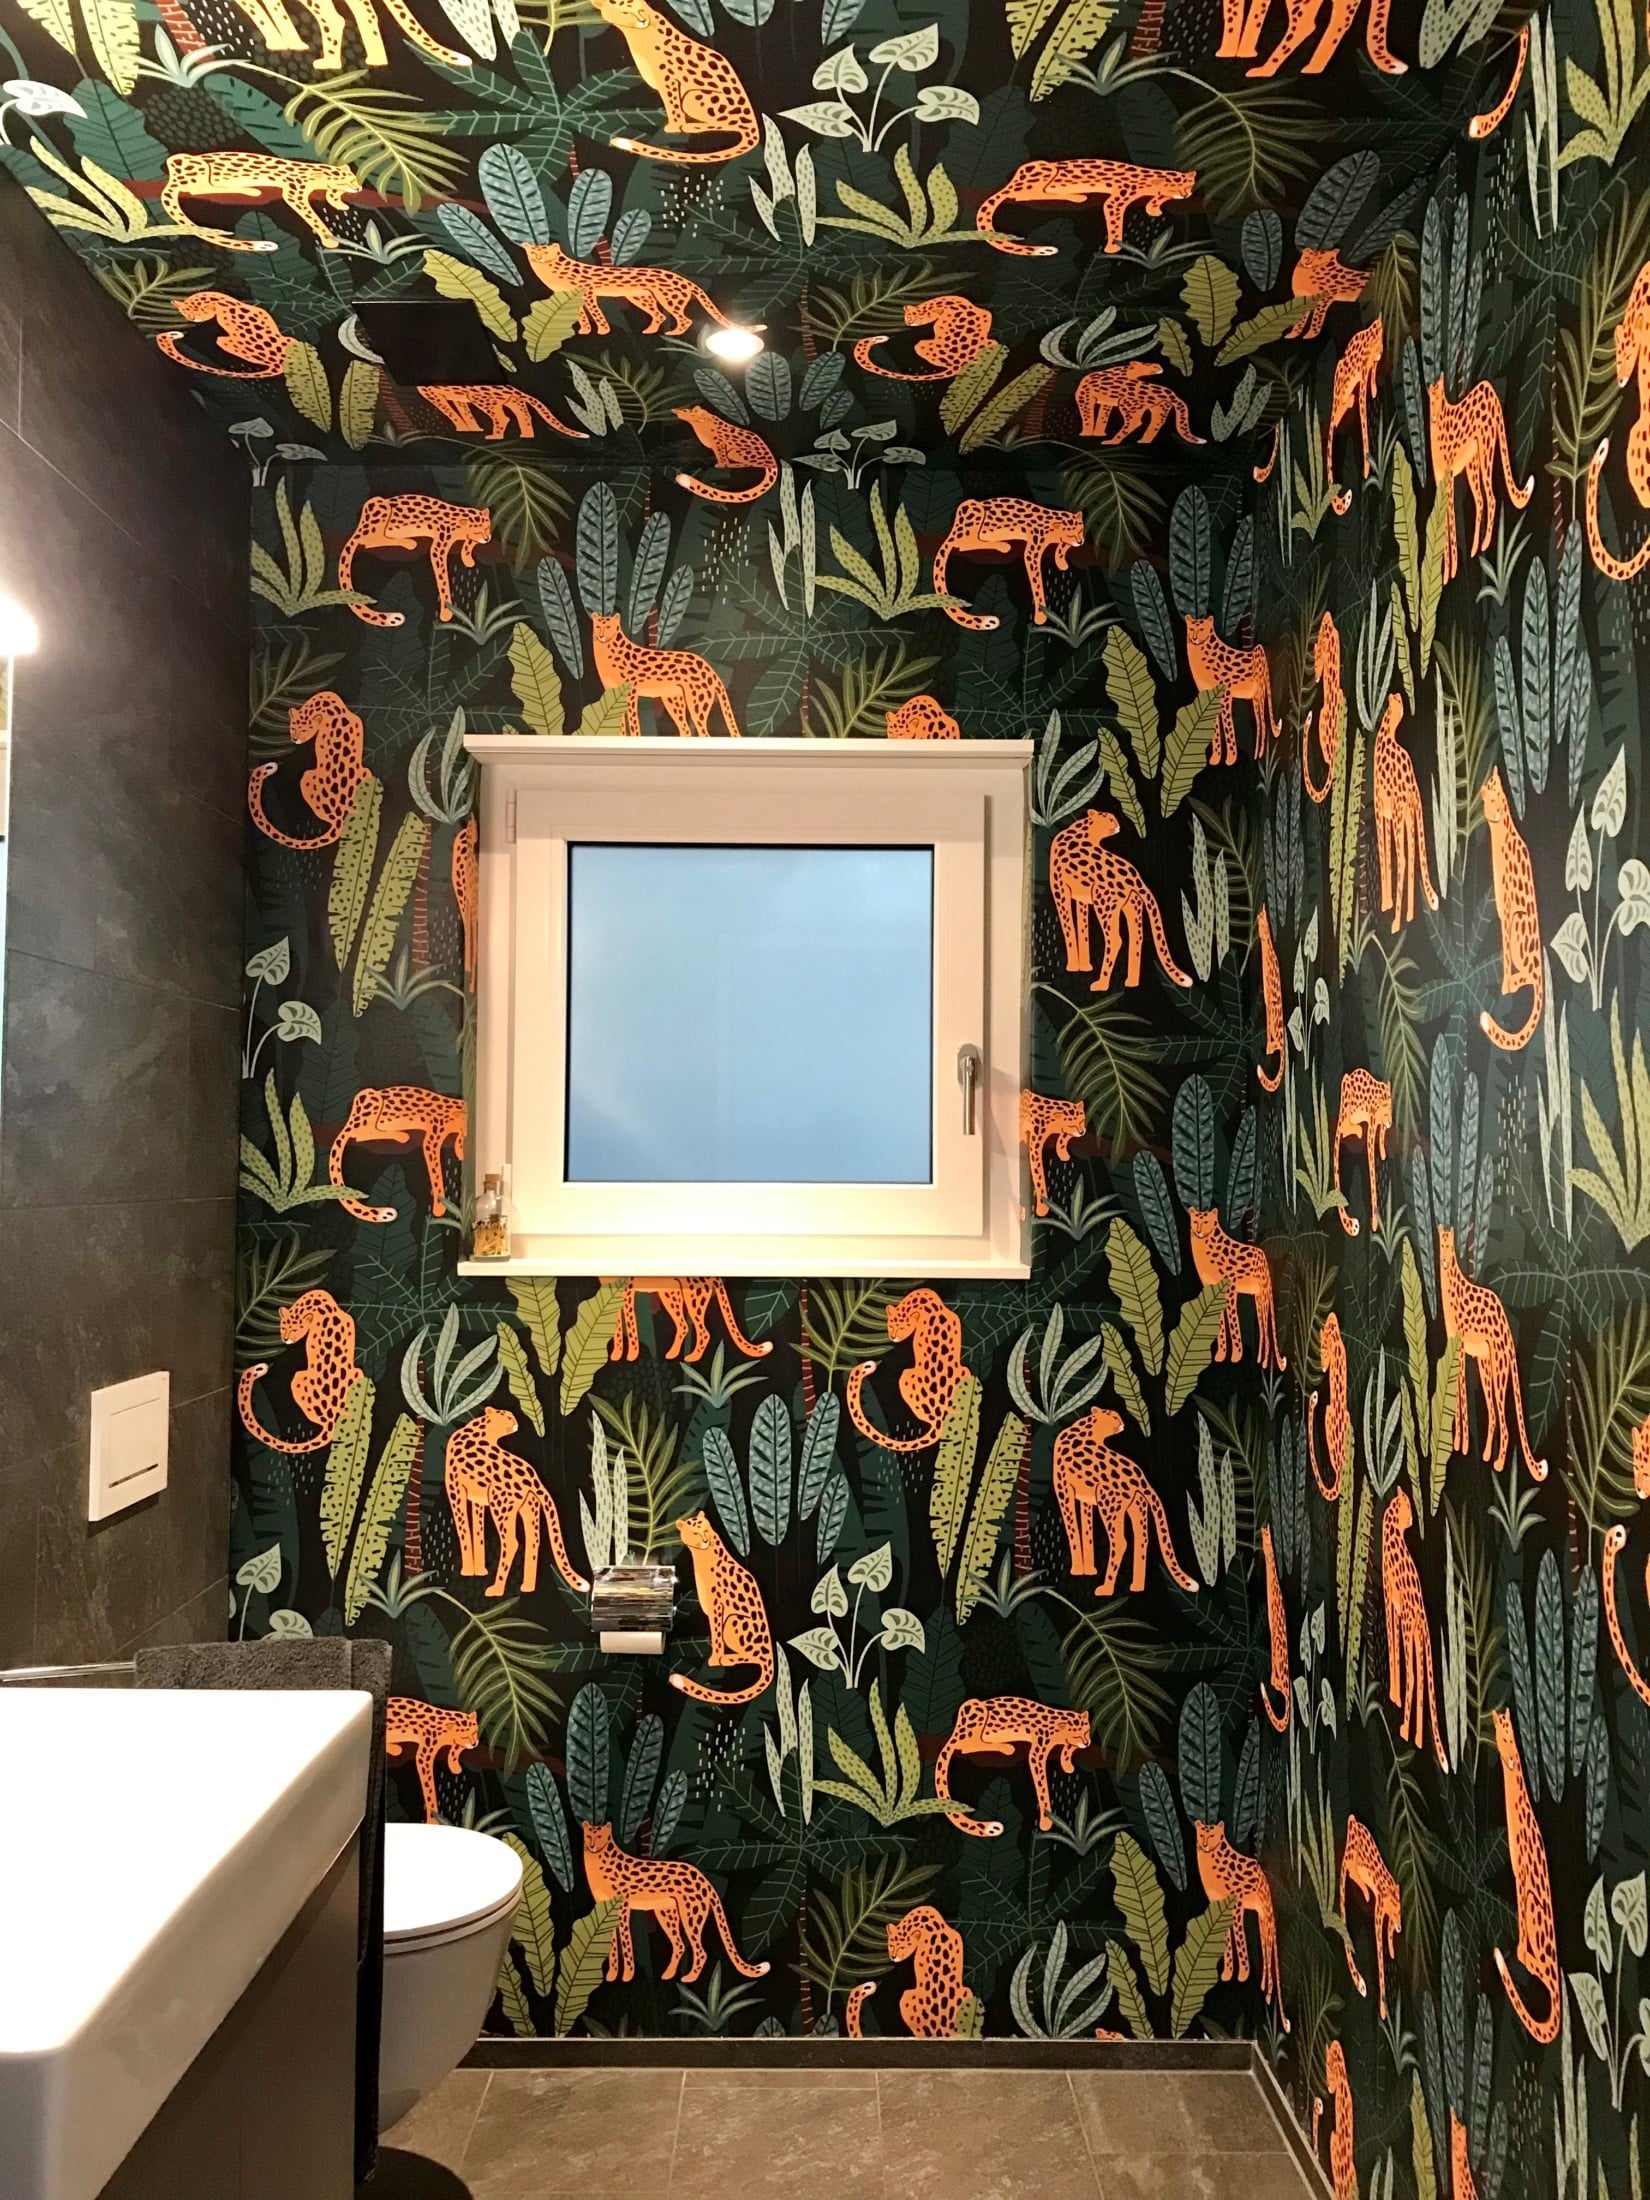 SIHL in einer Gästetoilette – Außergewöhnliche Gestaltung sorgt für optische Größe